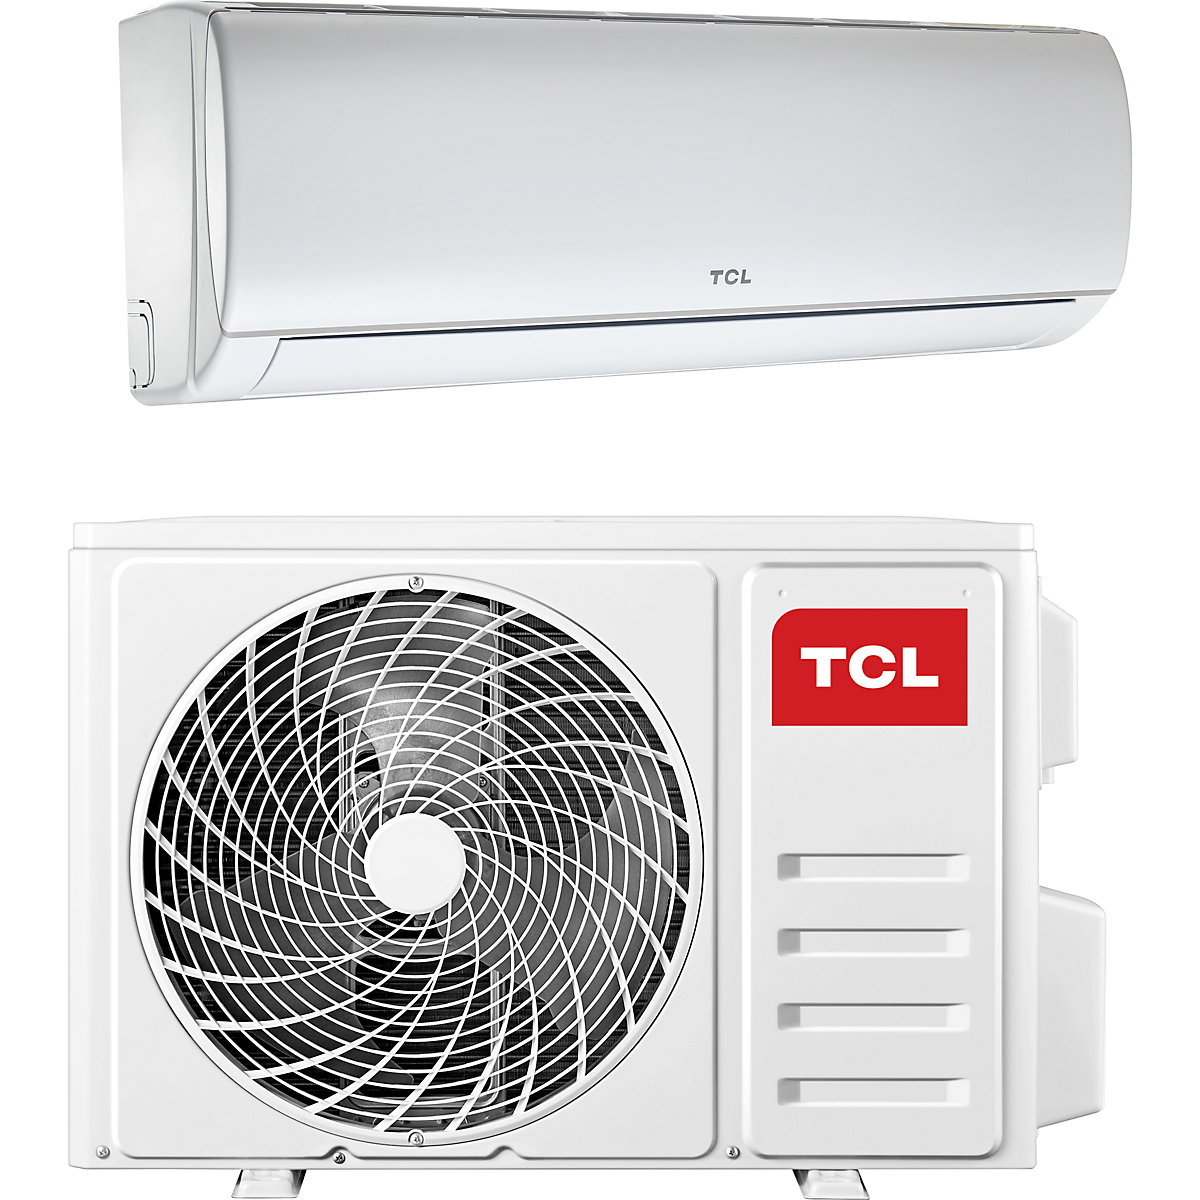 12000 BTU split air conditioner – TCL